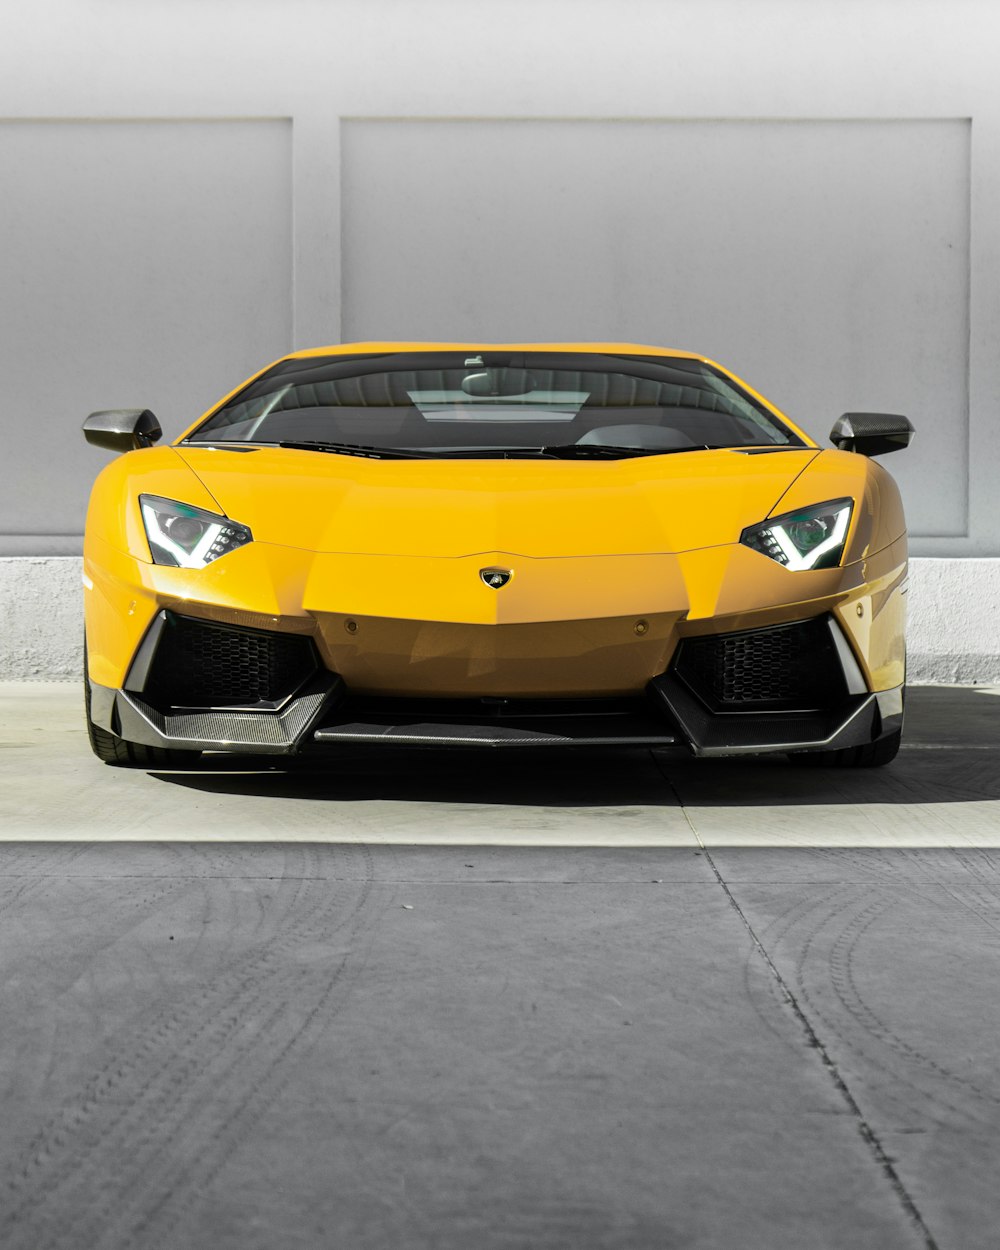 Lamborghini Aventador amarillo estacionado en una carretera de concreto gris